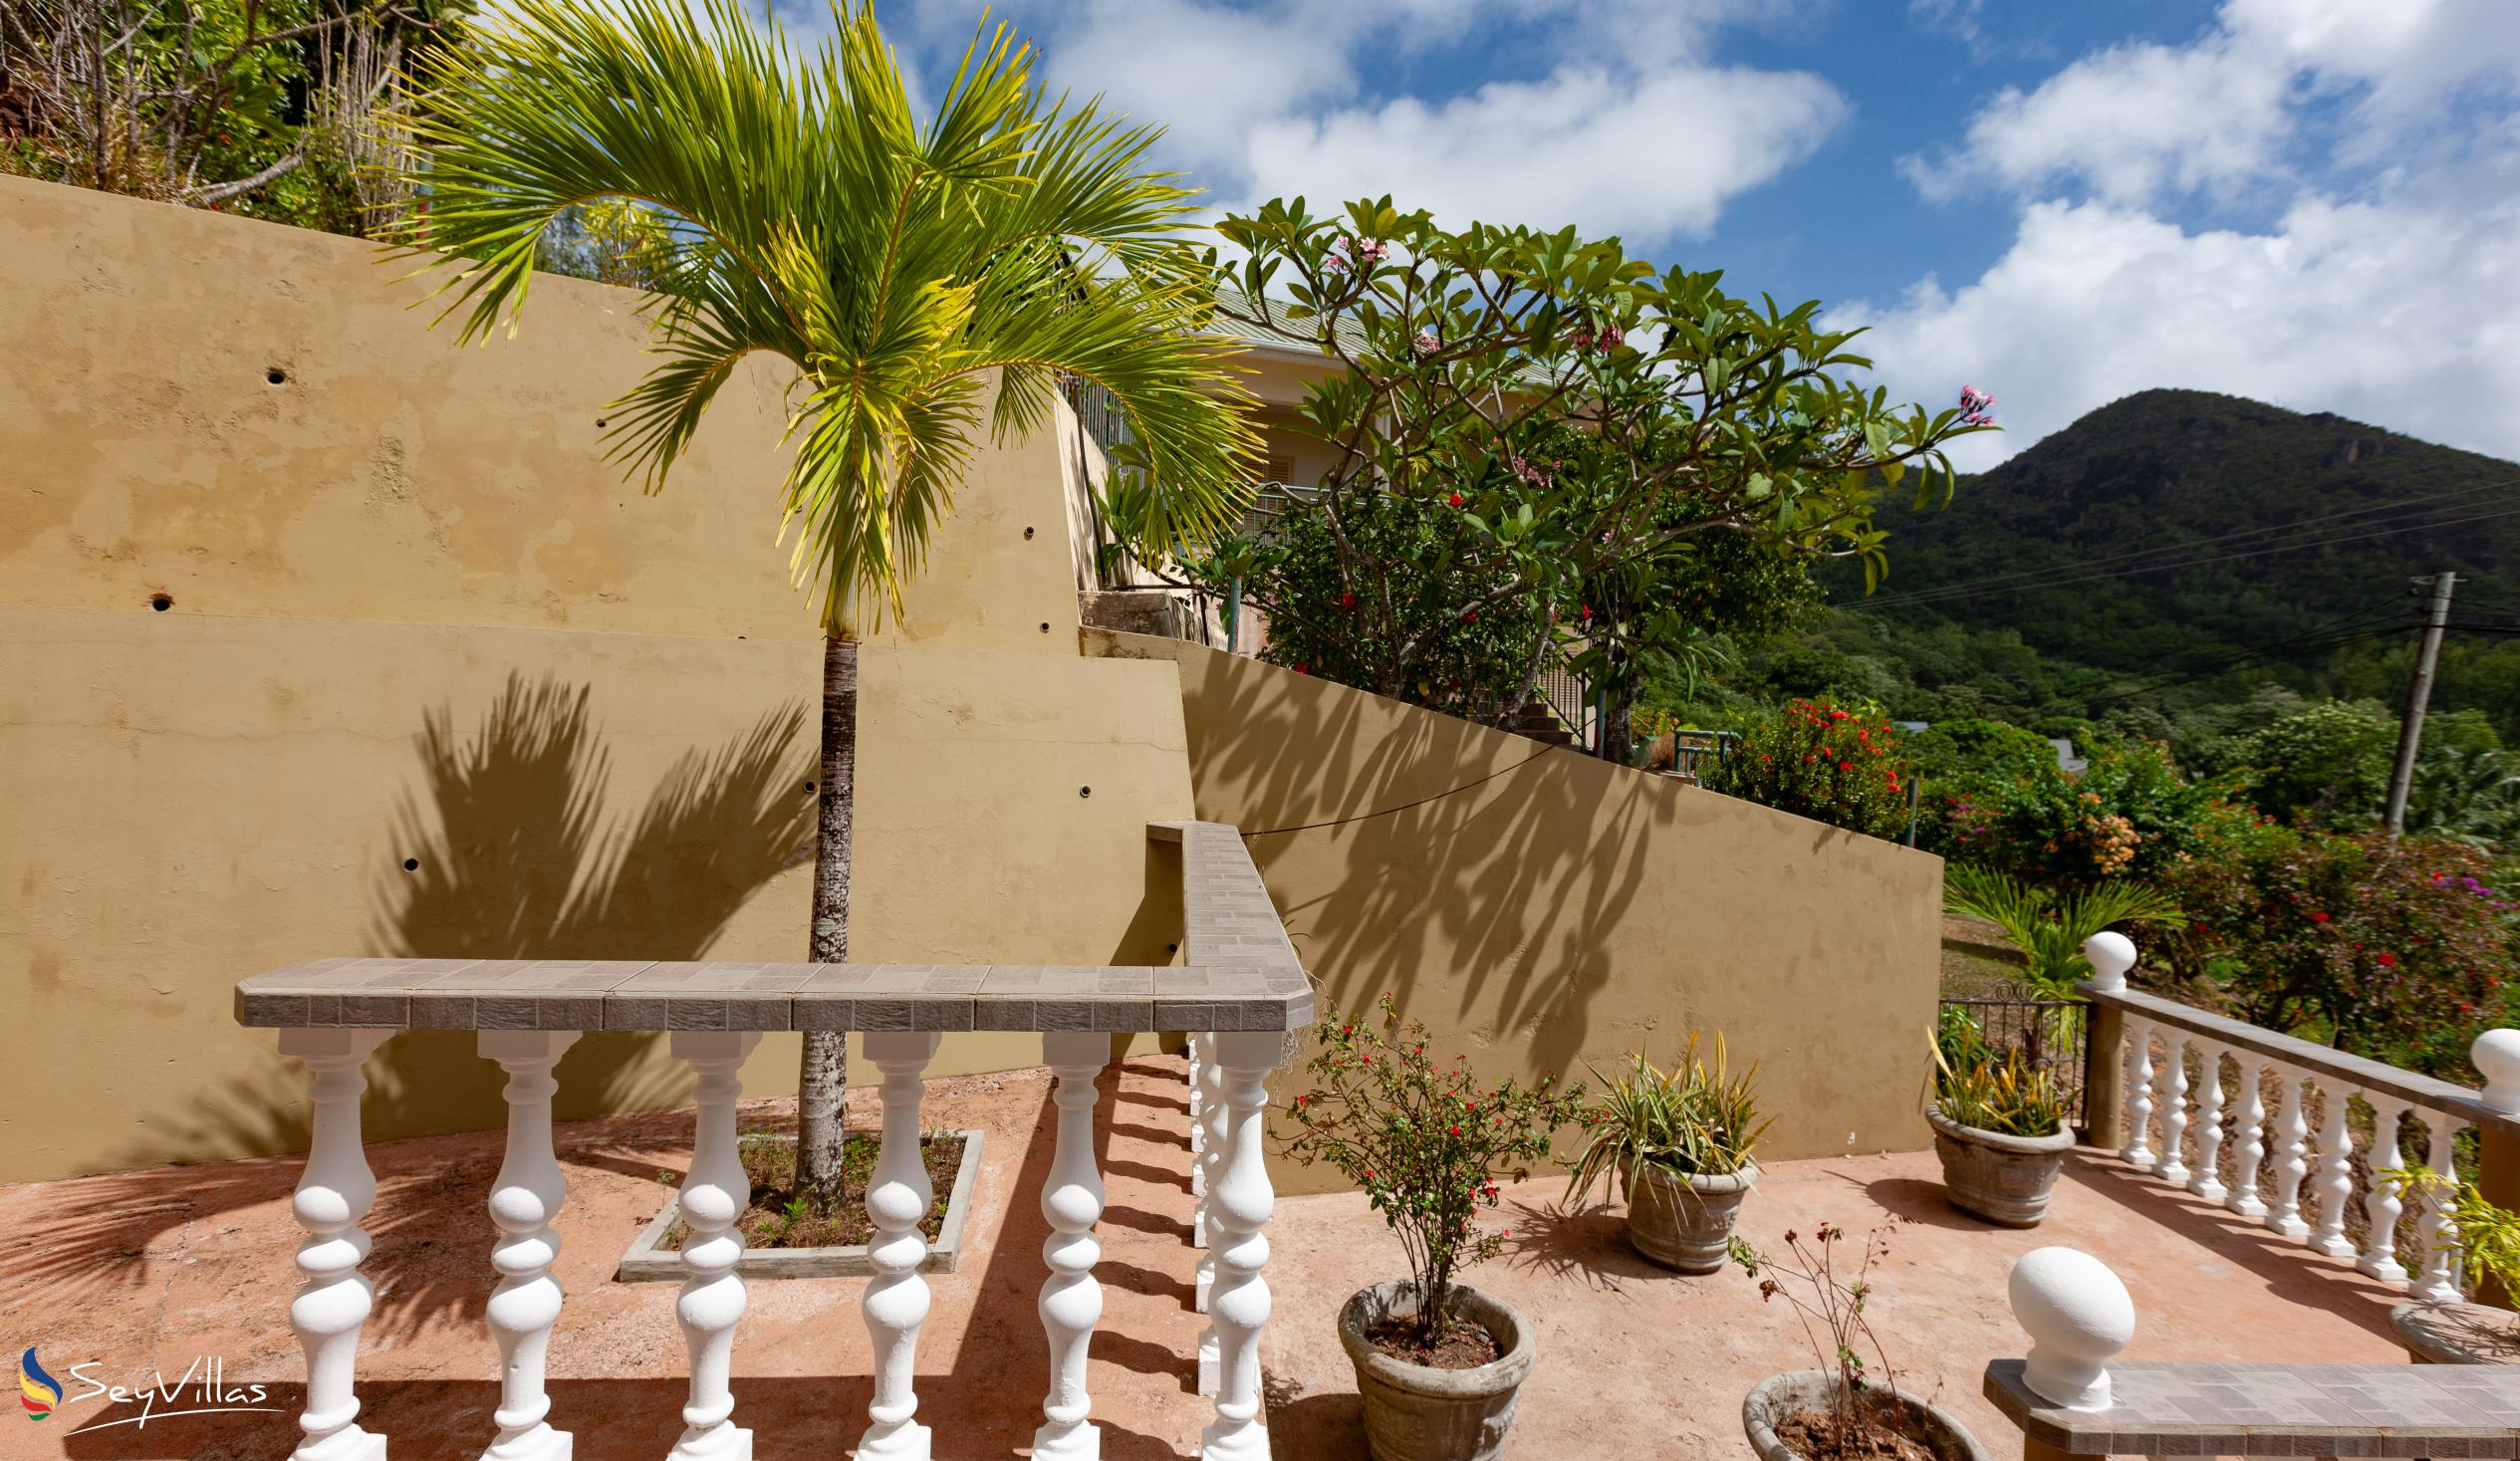 Foto 11: Villa Anse La Blague - Aussenbereich - Praslin (Seychellen)